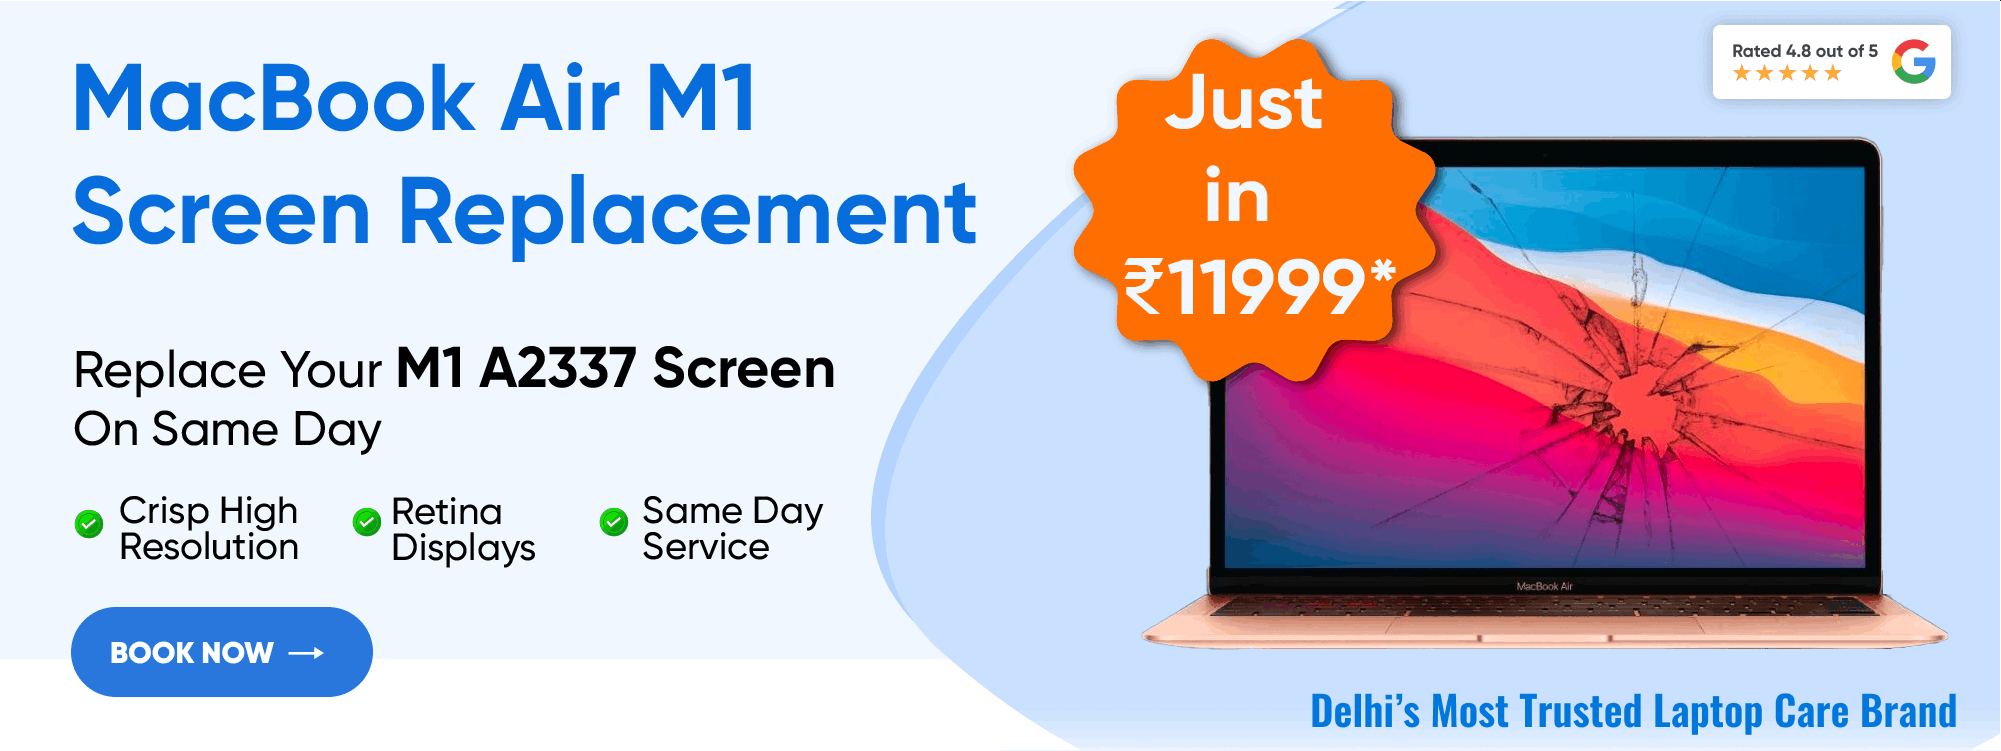 macbook air m1 a2337 screen replacement in gurgaon haryana